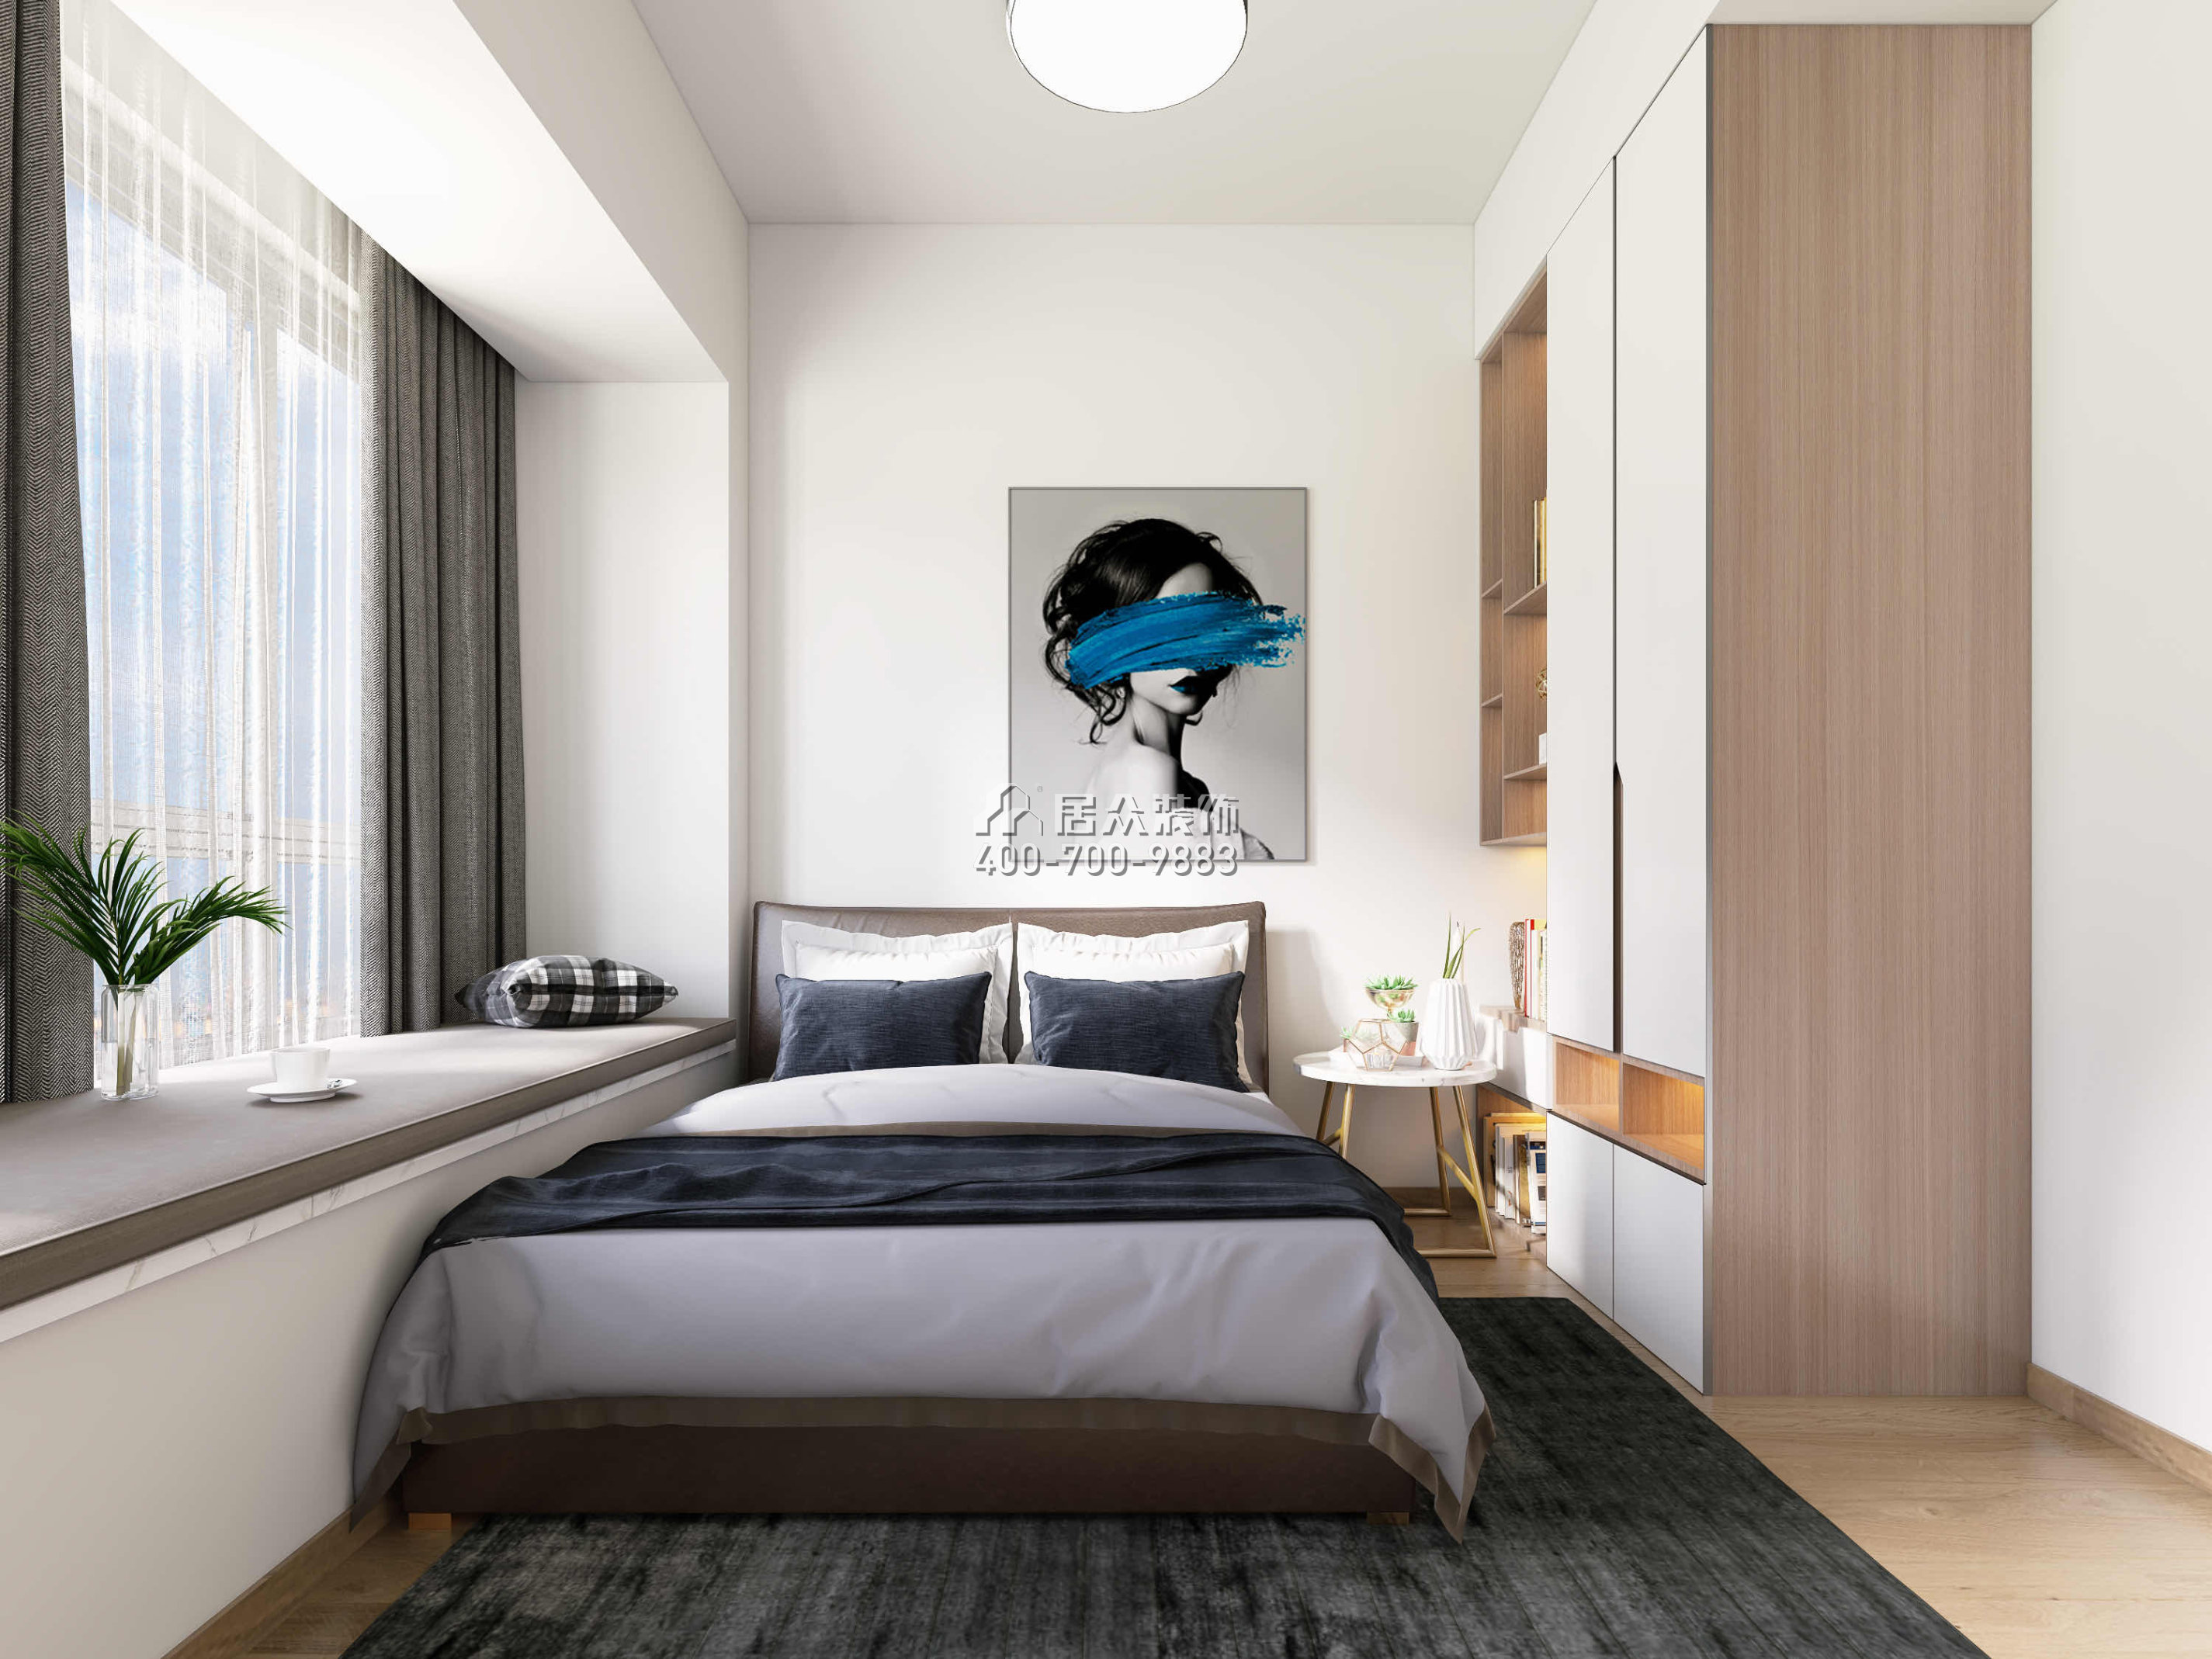 华发国际海岸揽澳郡95平方米现代简约风格平层户型卧室装修效果图